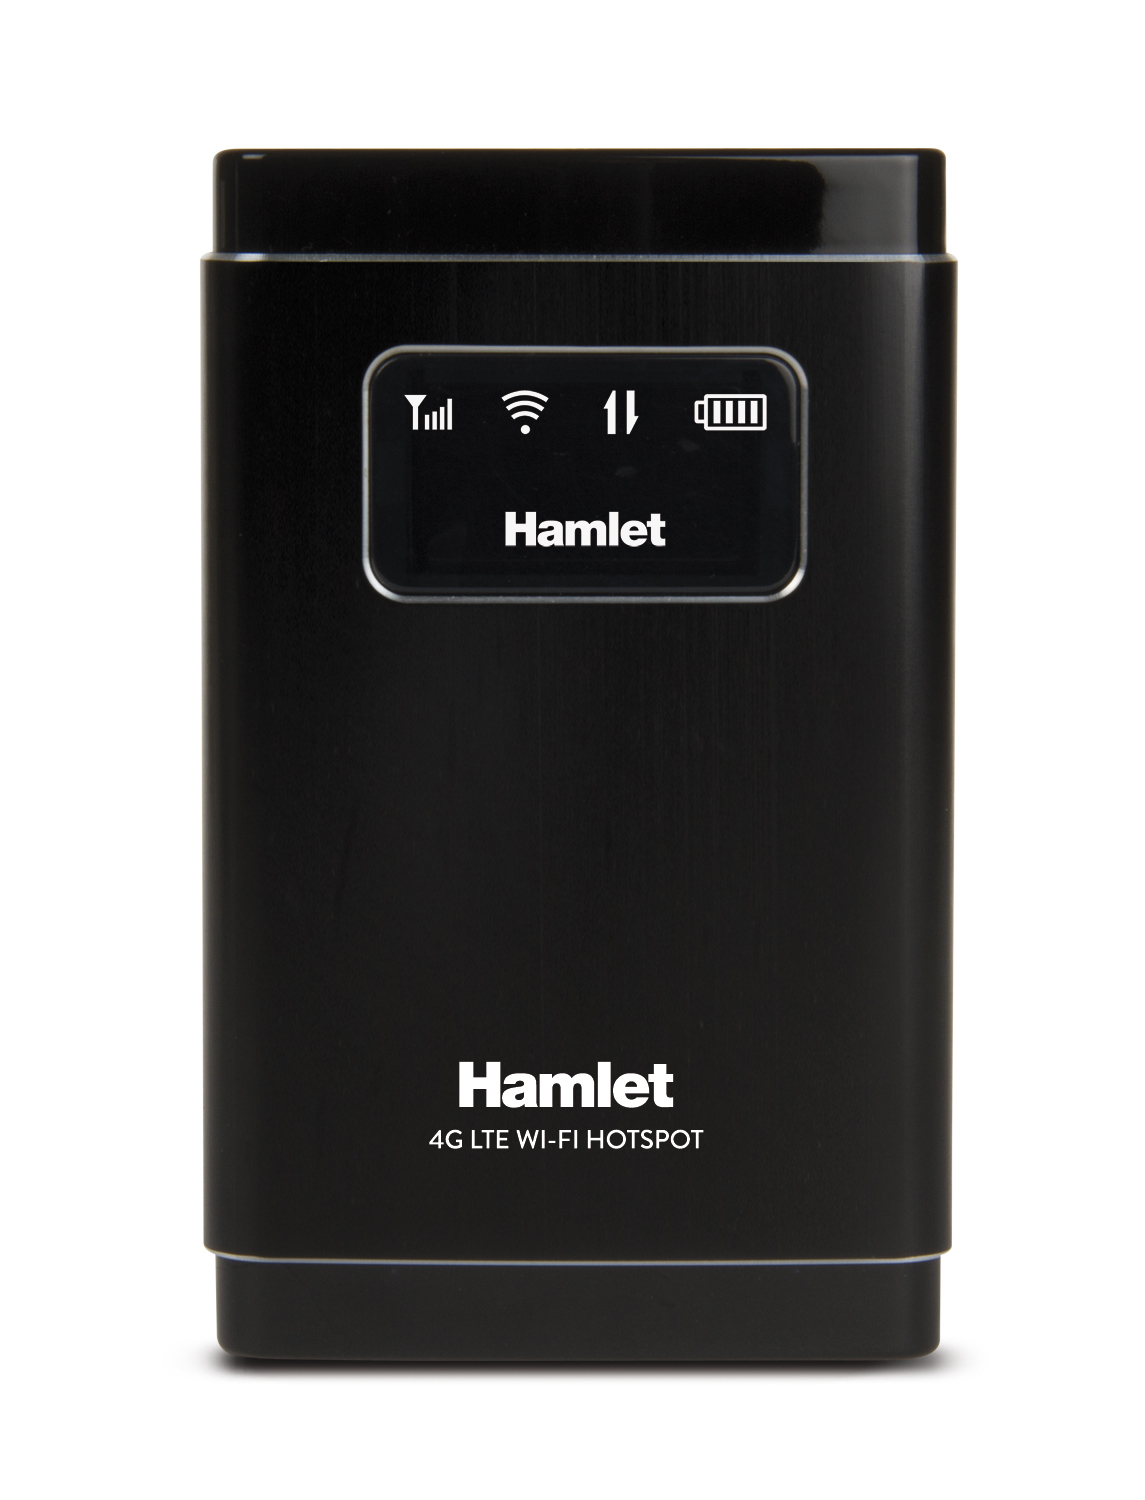 Router wireless Hamlet Wi-Fi 4G LTE condivisione rete fino a 10 dispositivi con slot Micro SD 32 GB